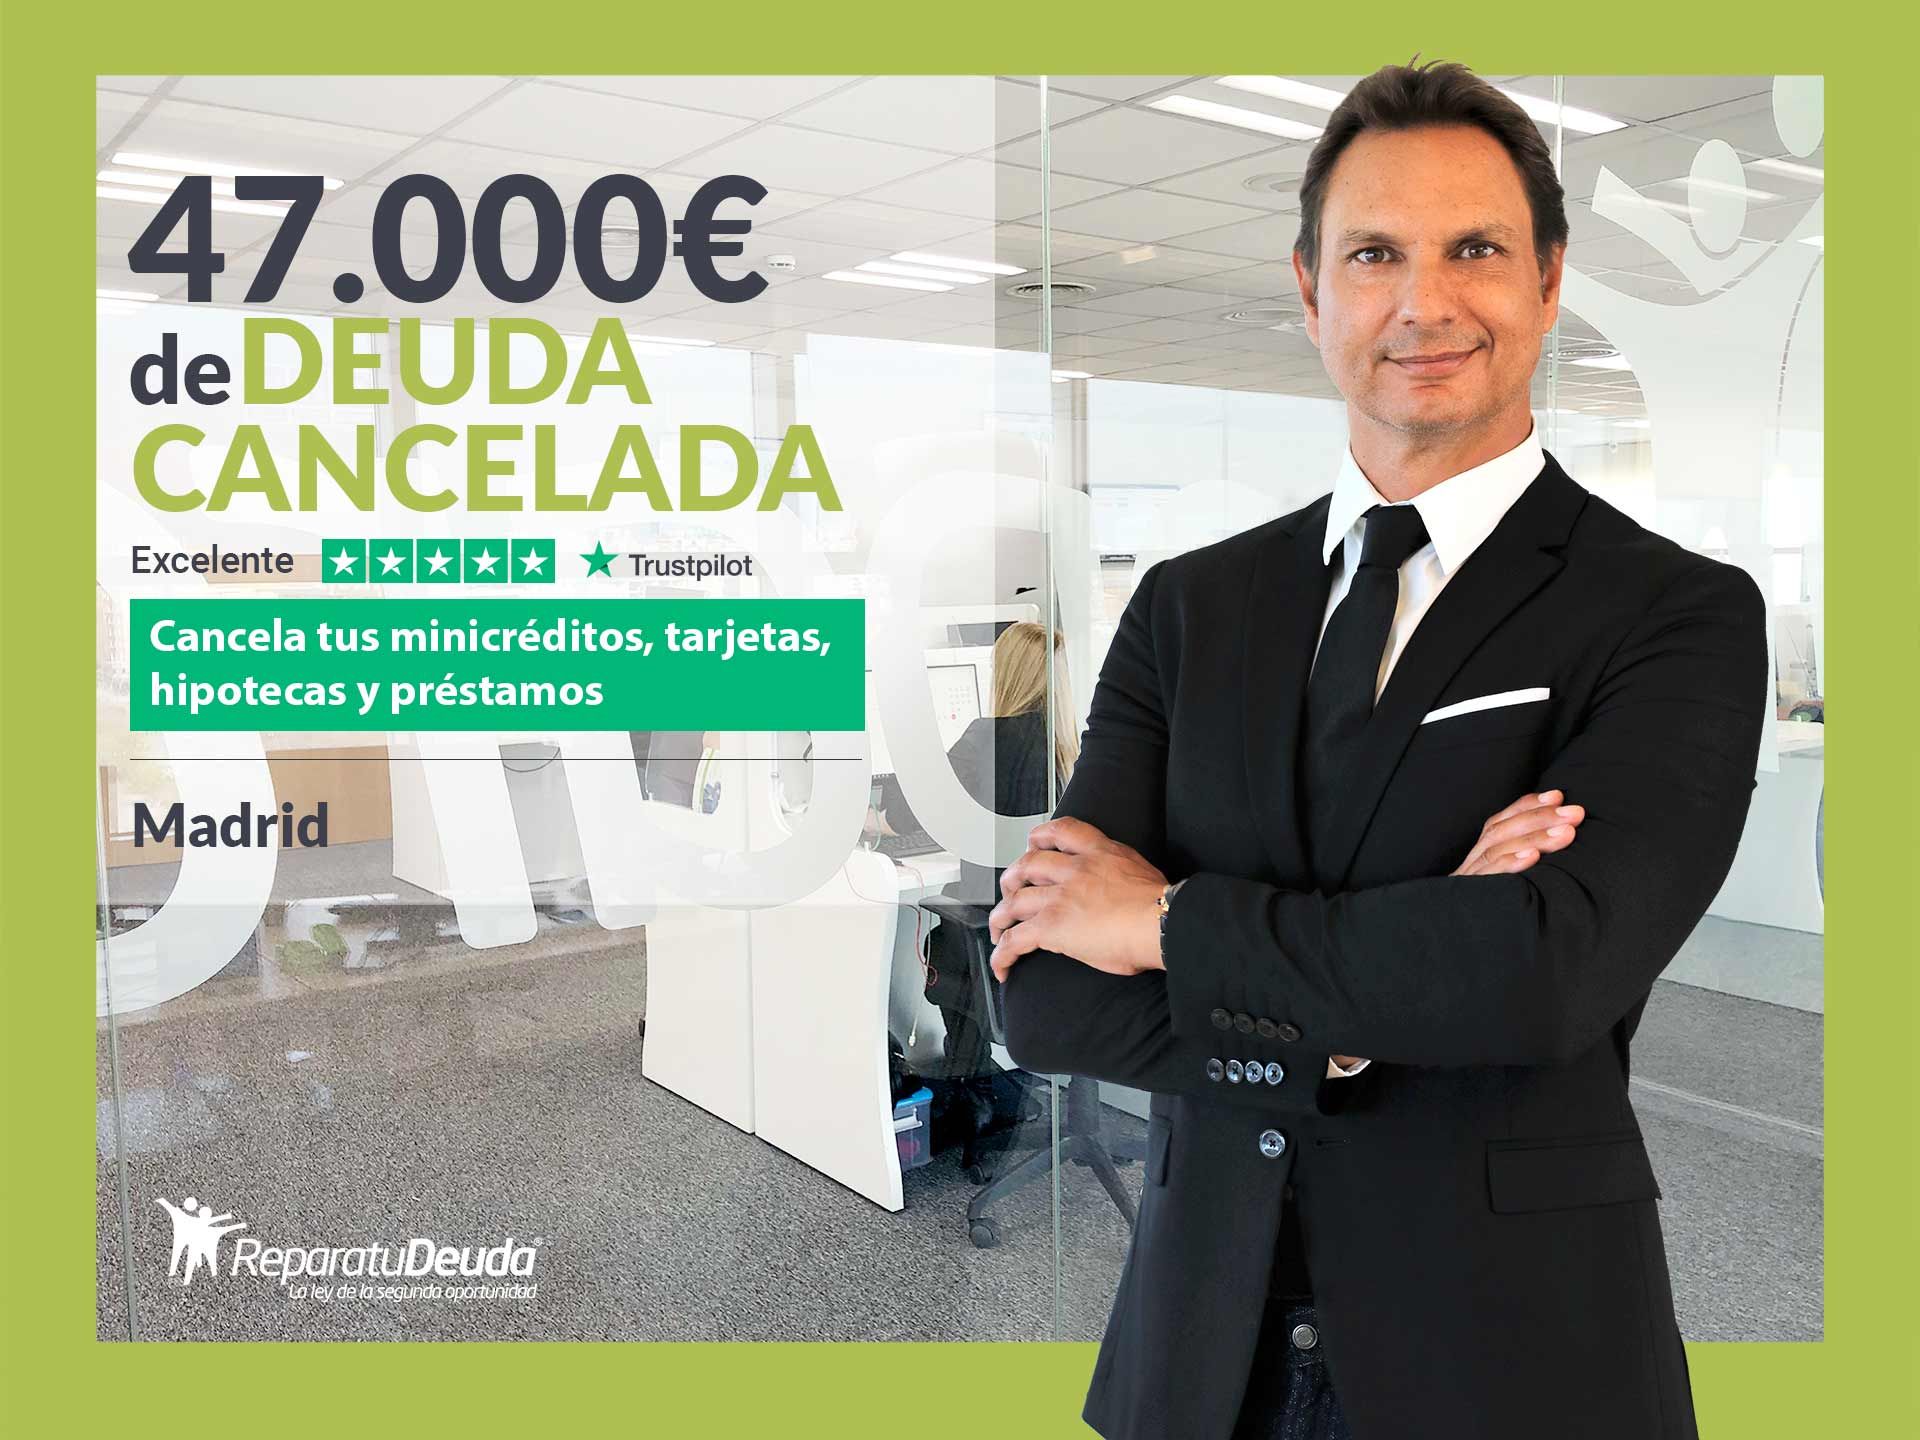 Repara tu Deuda Abogados cancela 47.000? en Madrid con la Ley de Segunda Oportunidad